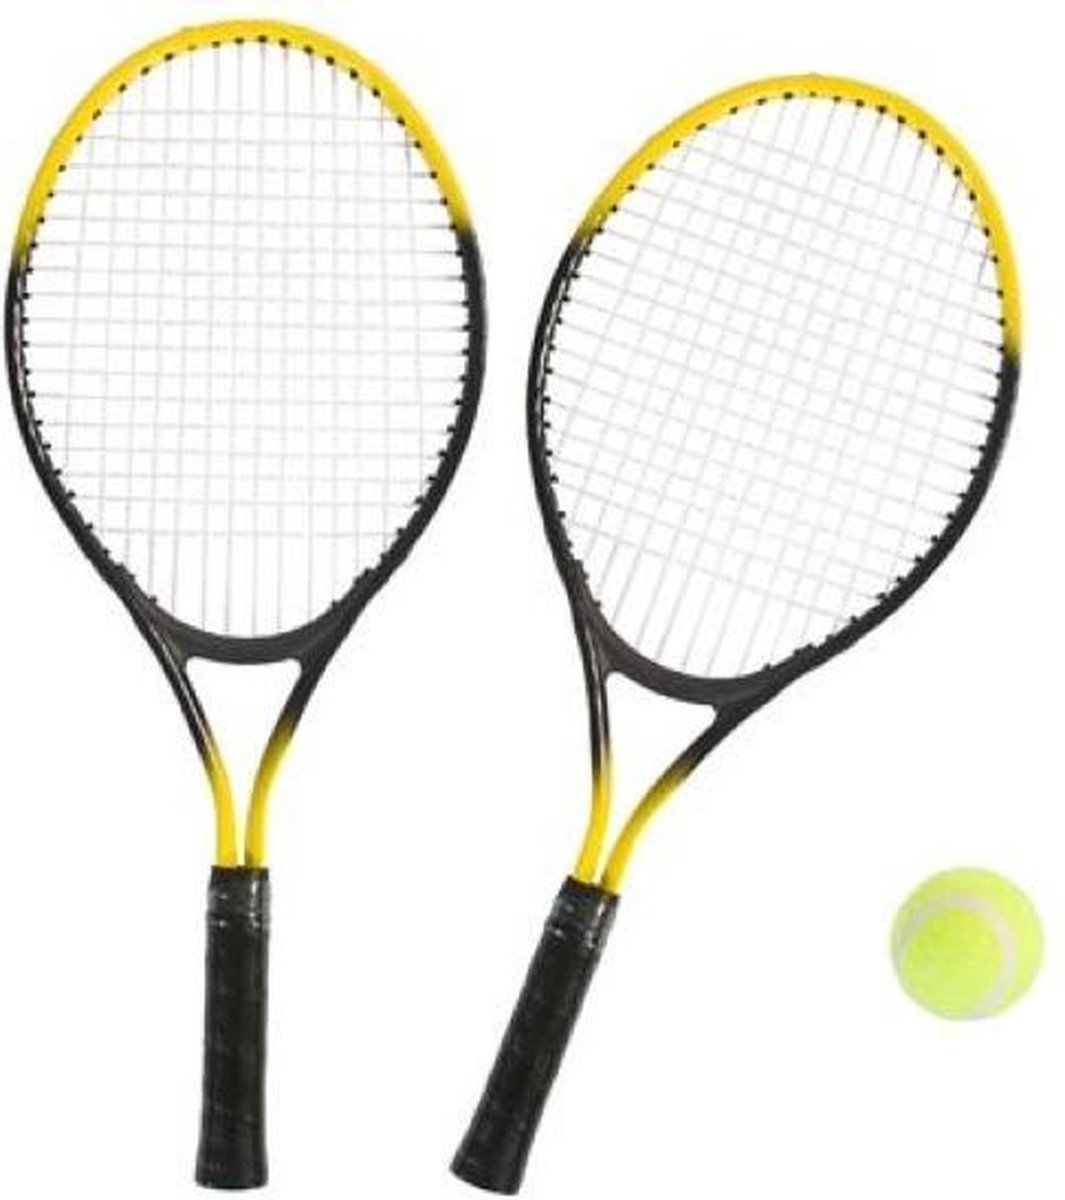 Tennisset - 2 Rackets met bal - geel